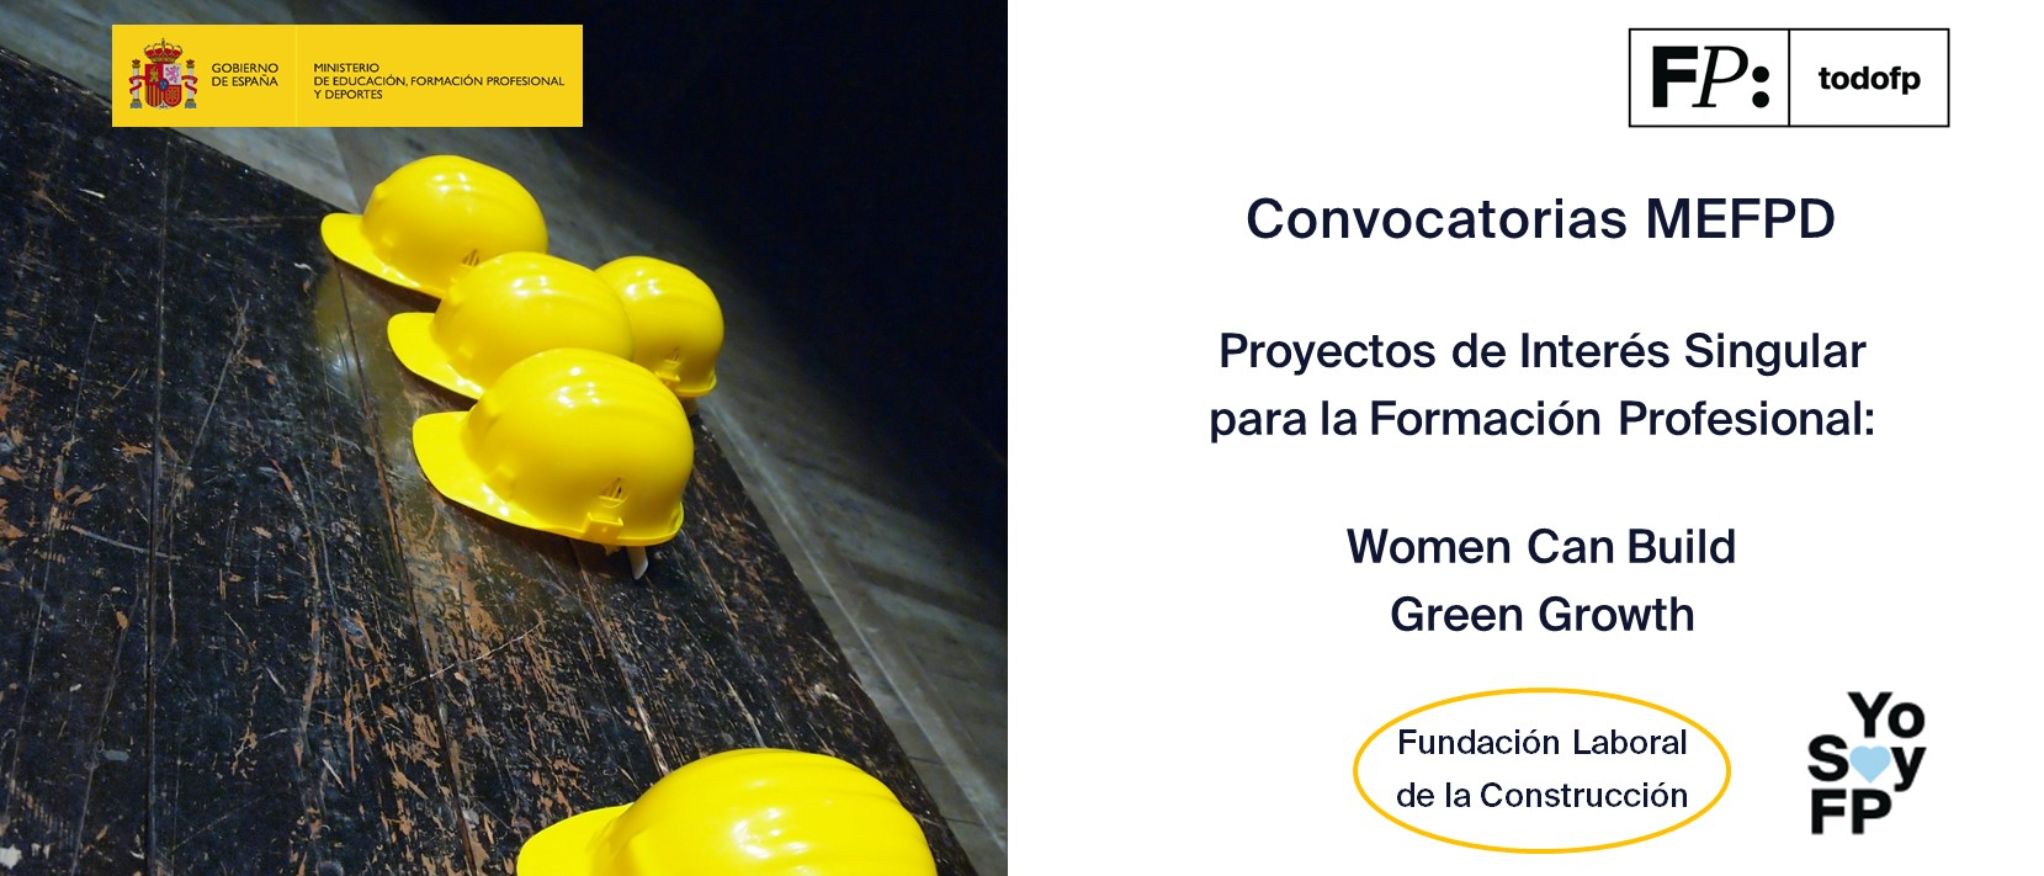 Los proyectos “Women Can Build” y “Green Growth”, reciben el reconocimiento por su interés singular para la Formación Profesional